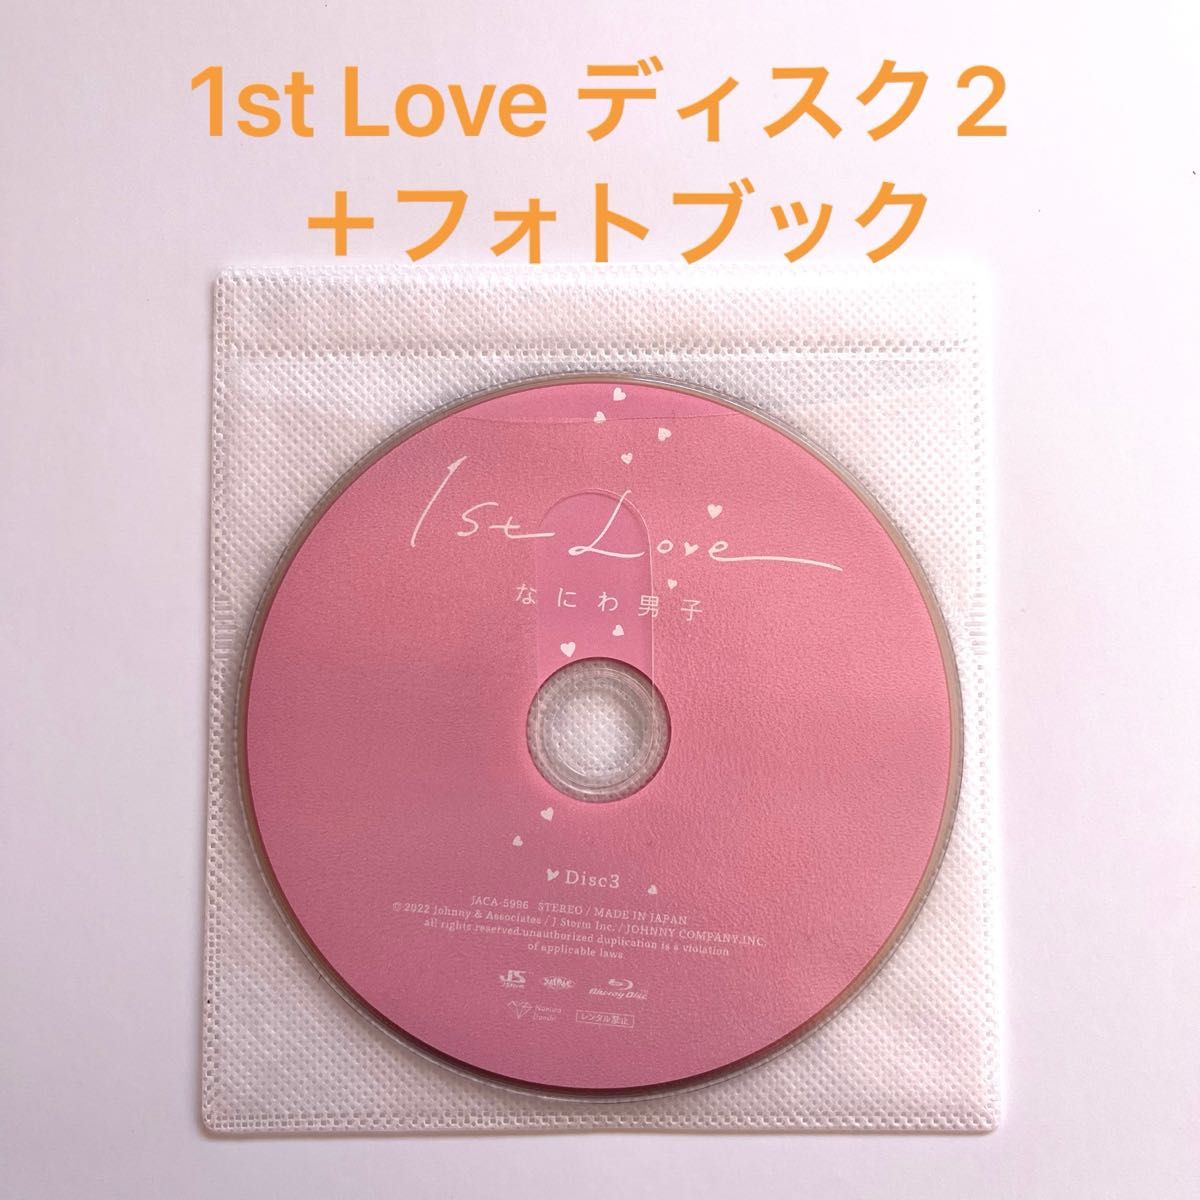 なにわ男子　1st love 初回限定盤1 ディスク②+フォトブック